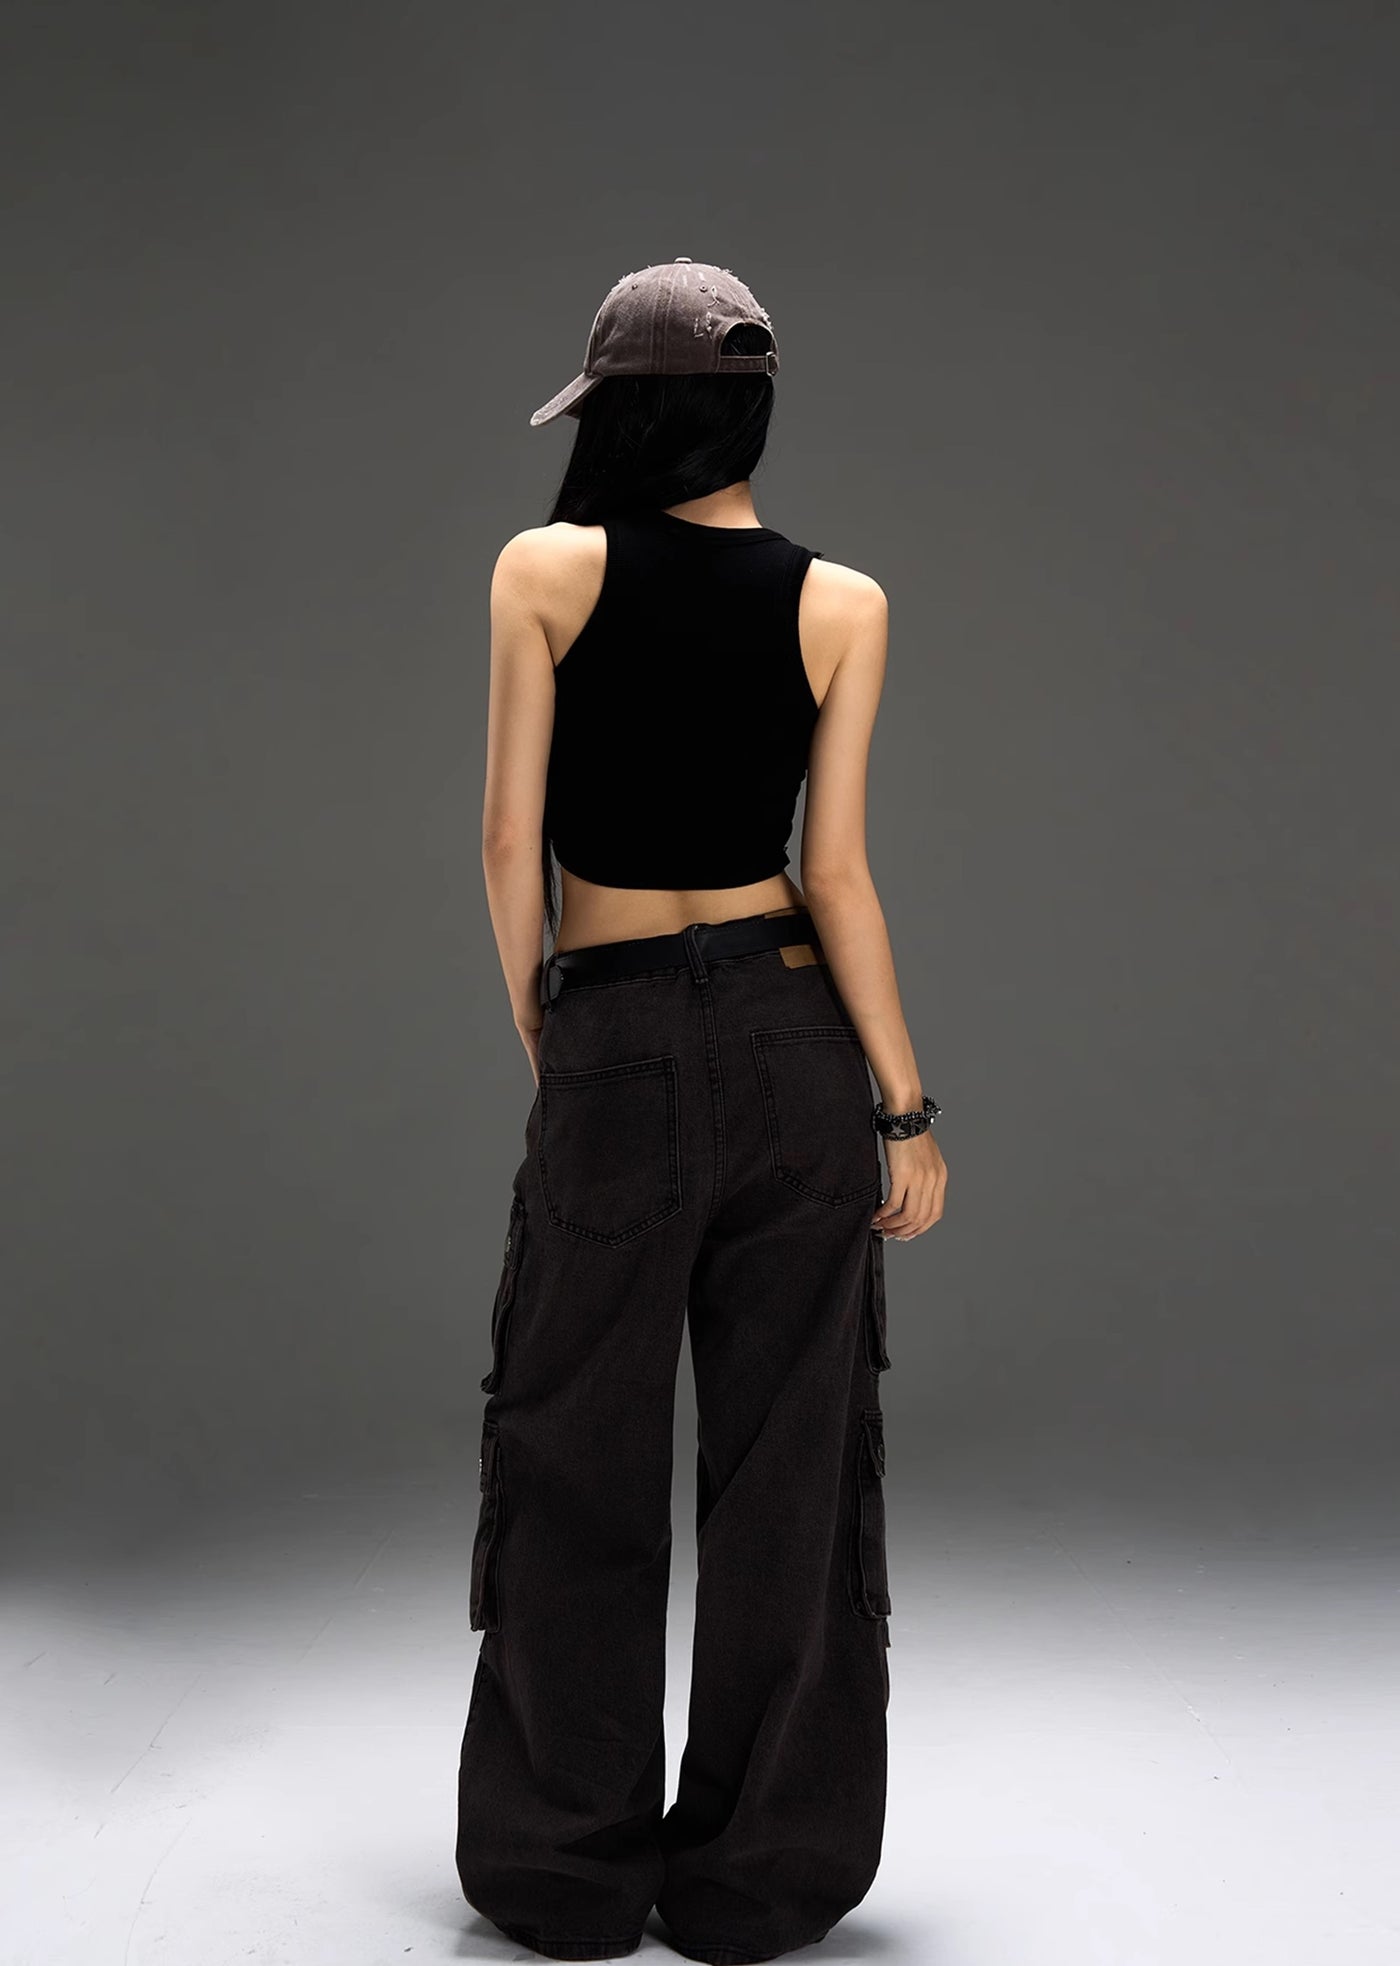 【MAXDSTR】Double pocket design dull color bottom tuck design denim pants  MD0156